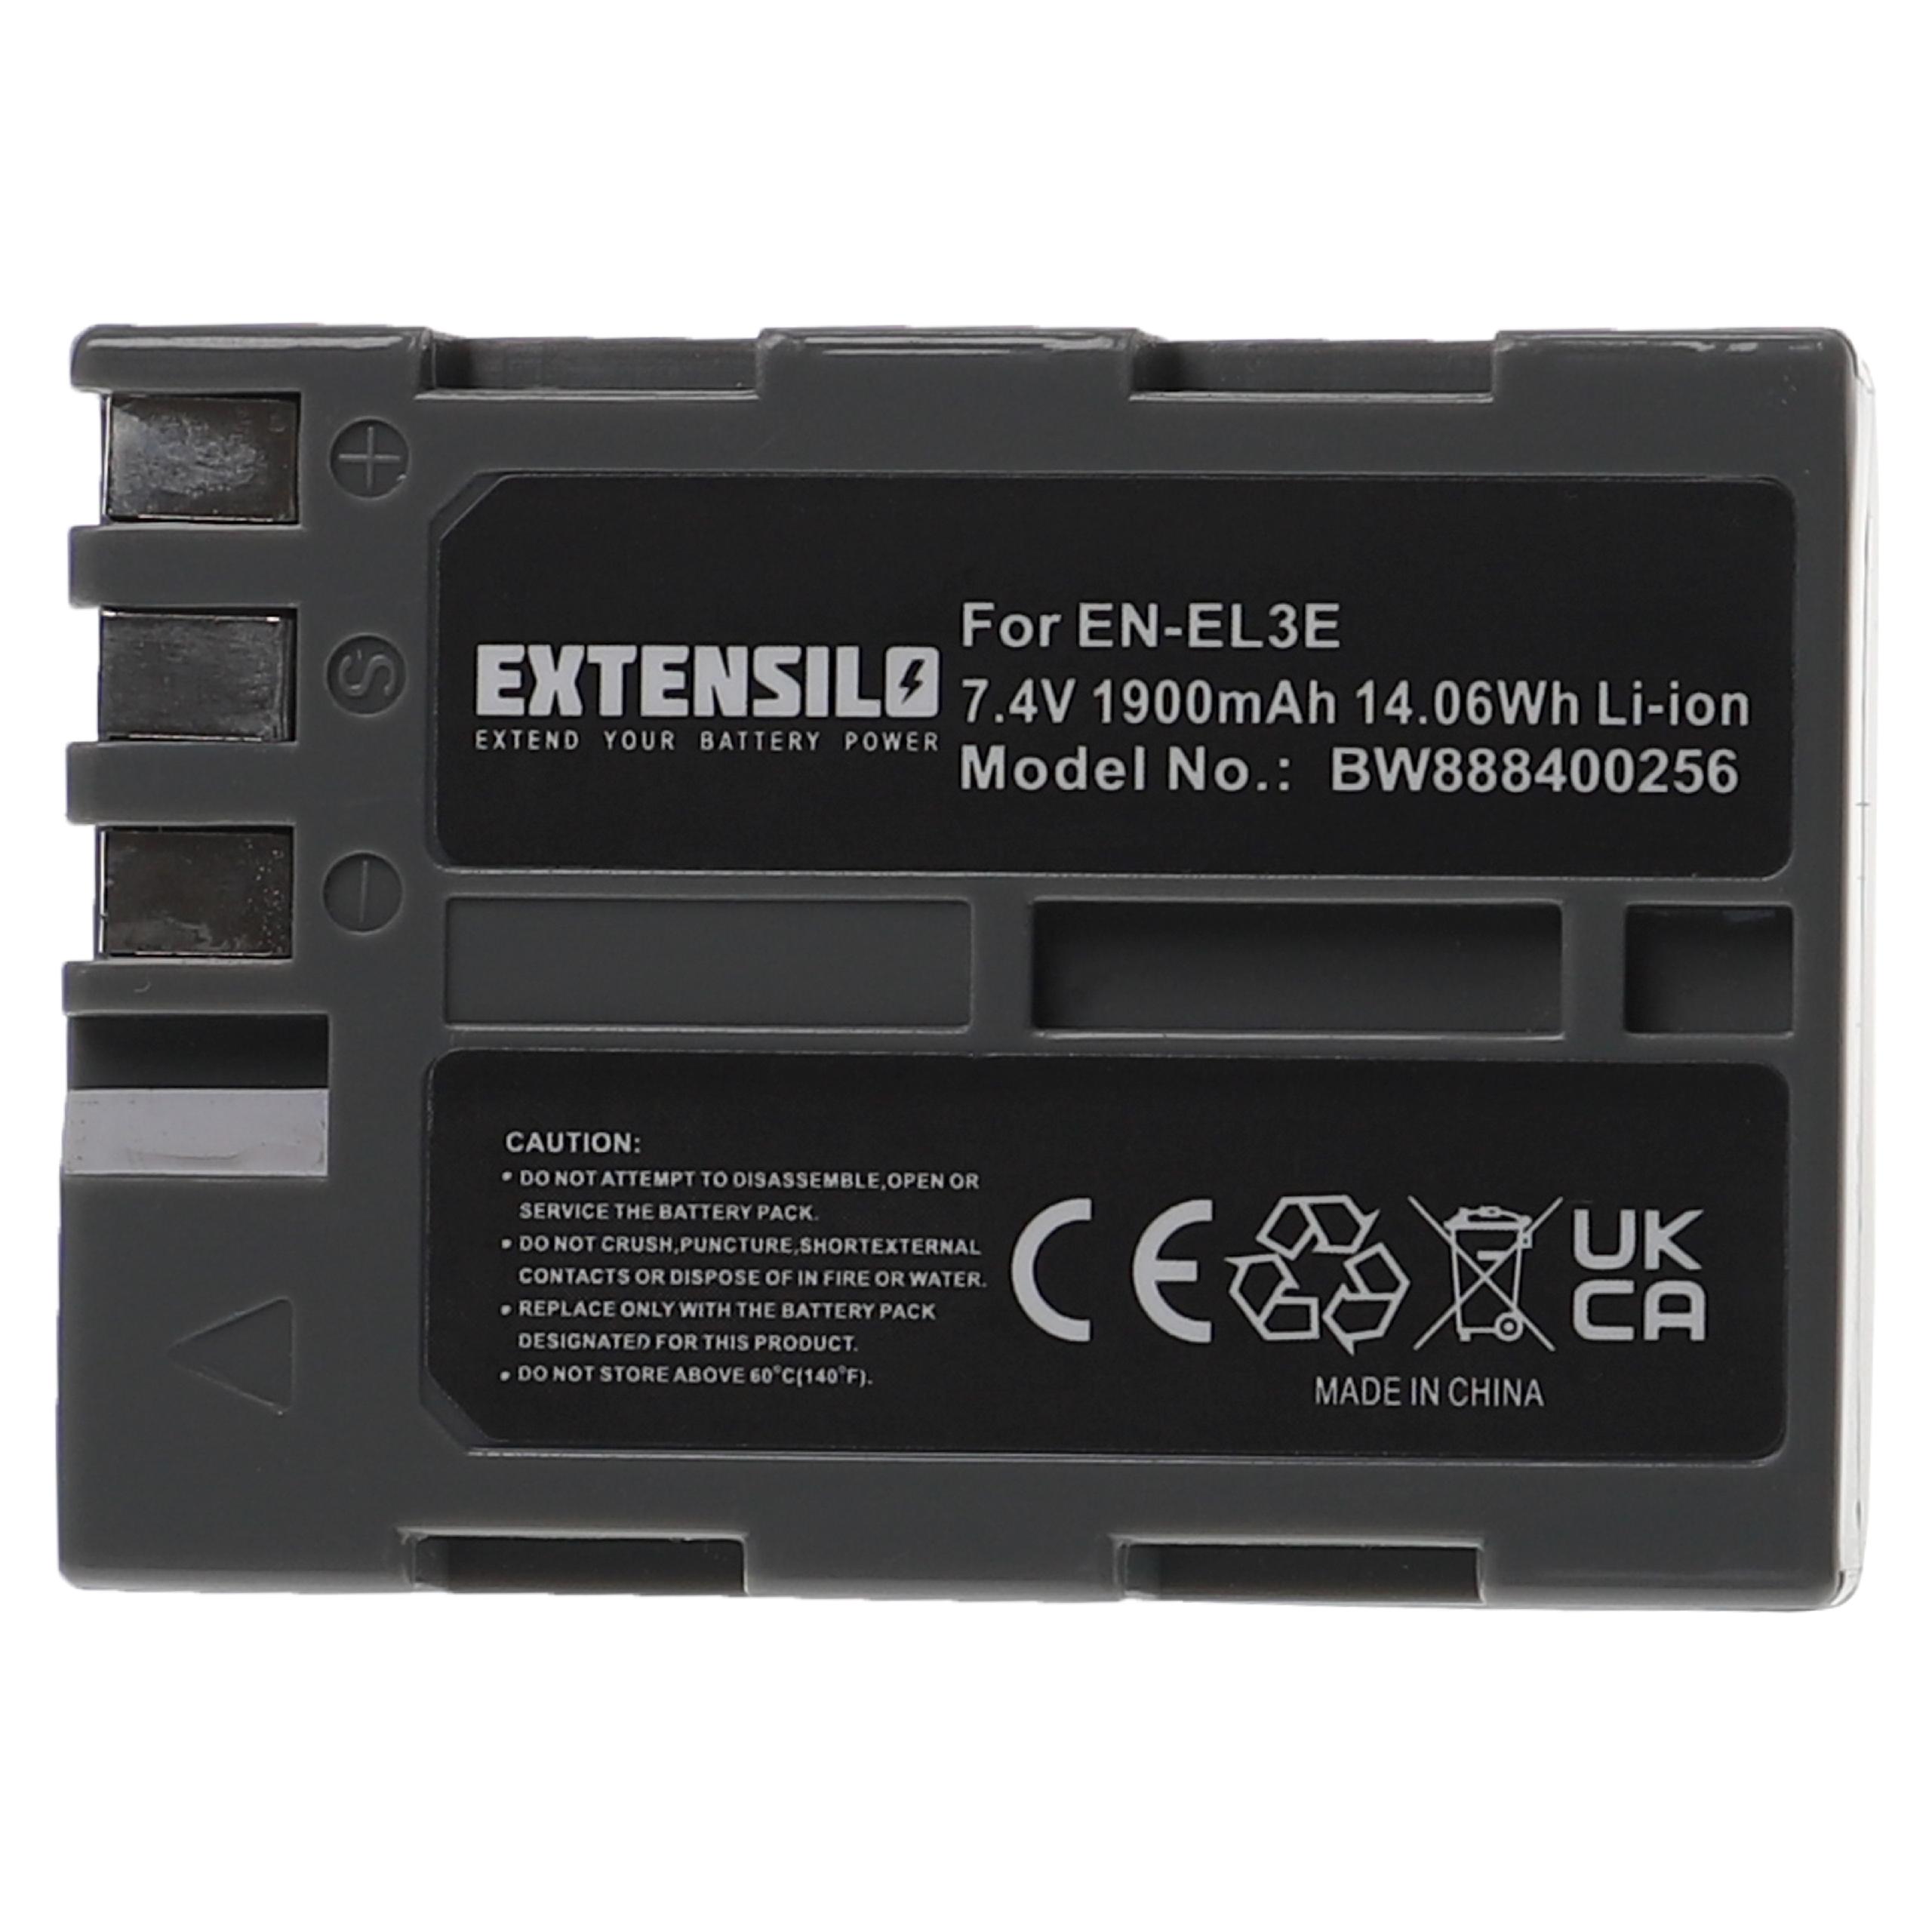 Batterie remplace Nikon EN-EL3e pour appareil photo - 1900mAh 7,4V Li-ion